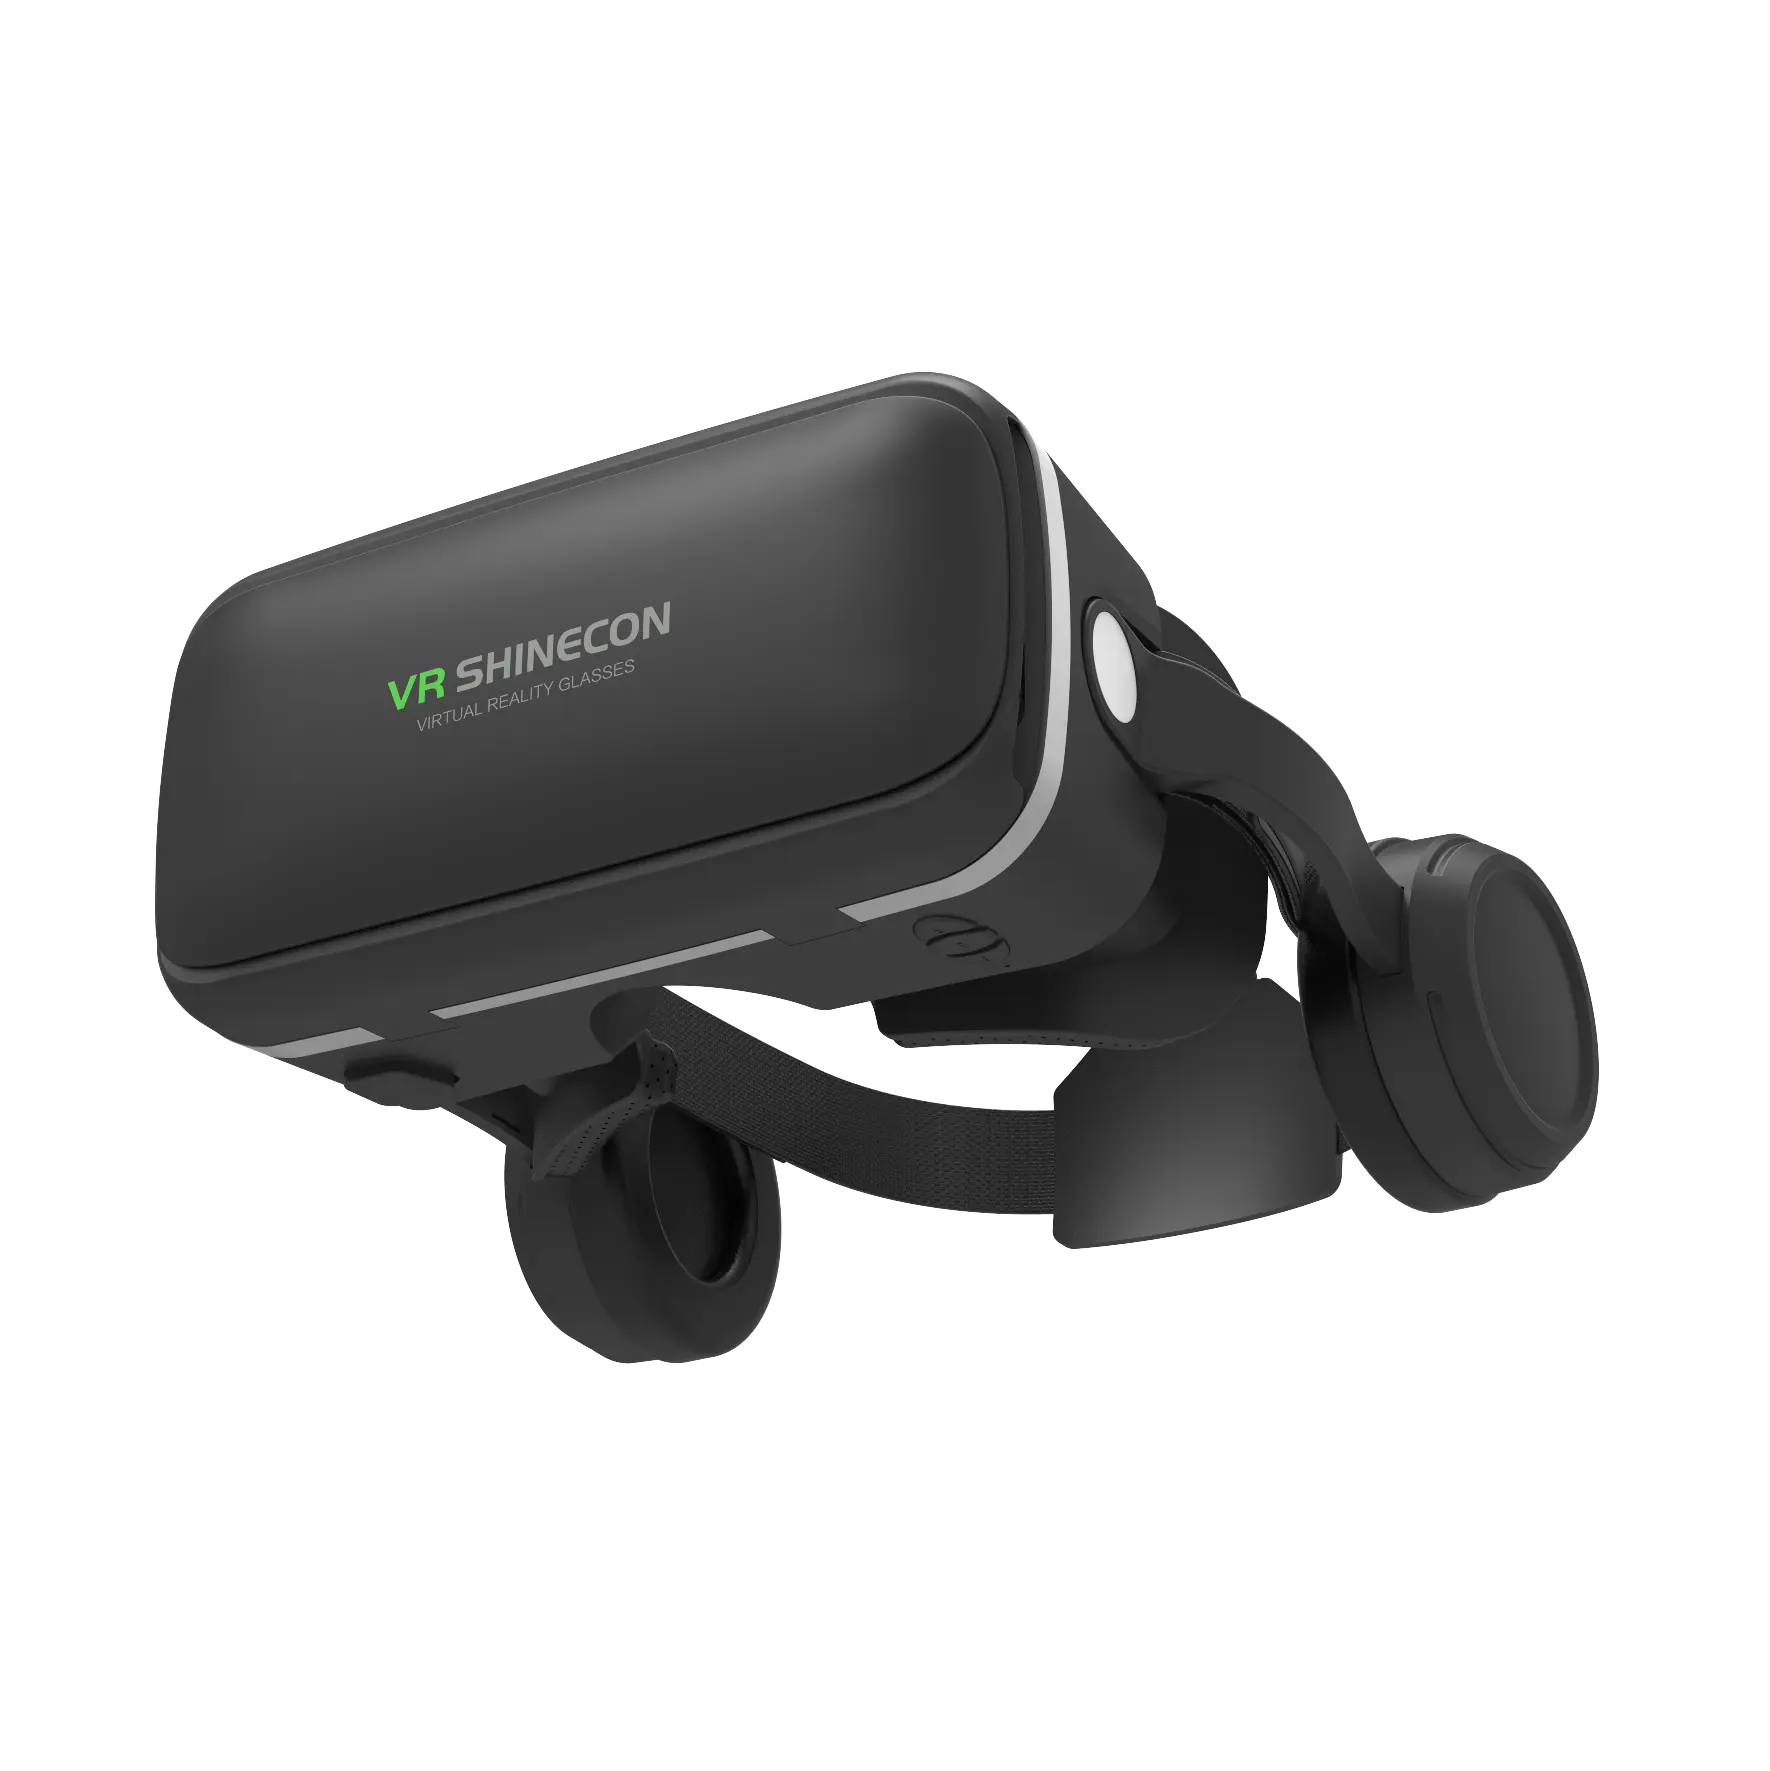 Aspherical עדשות לספק חדה תמונה HD 3d משקפיים מציאות מדומה עם אוזניות באיכות גבוהה 3d vr משקפיים